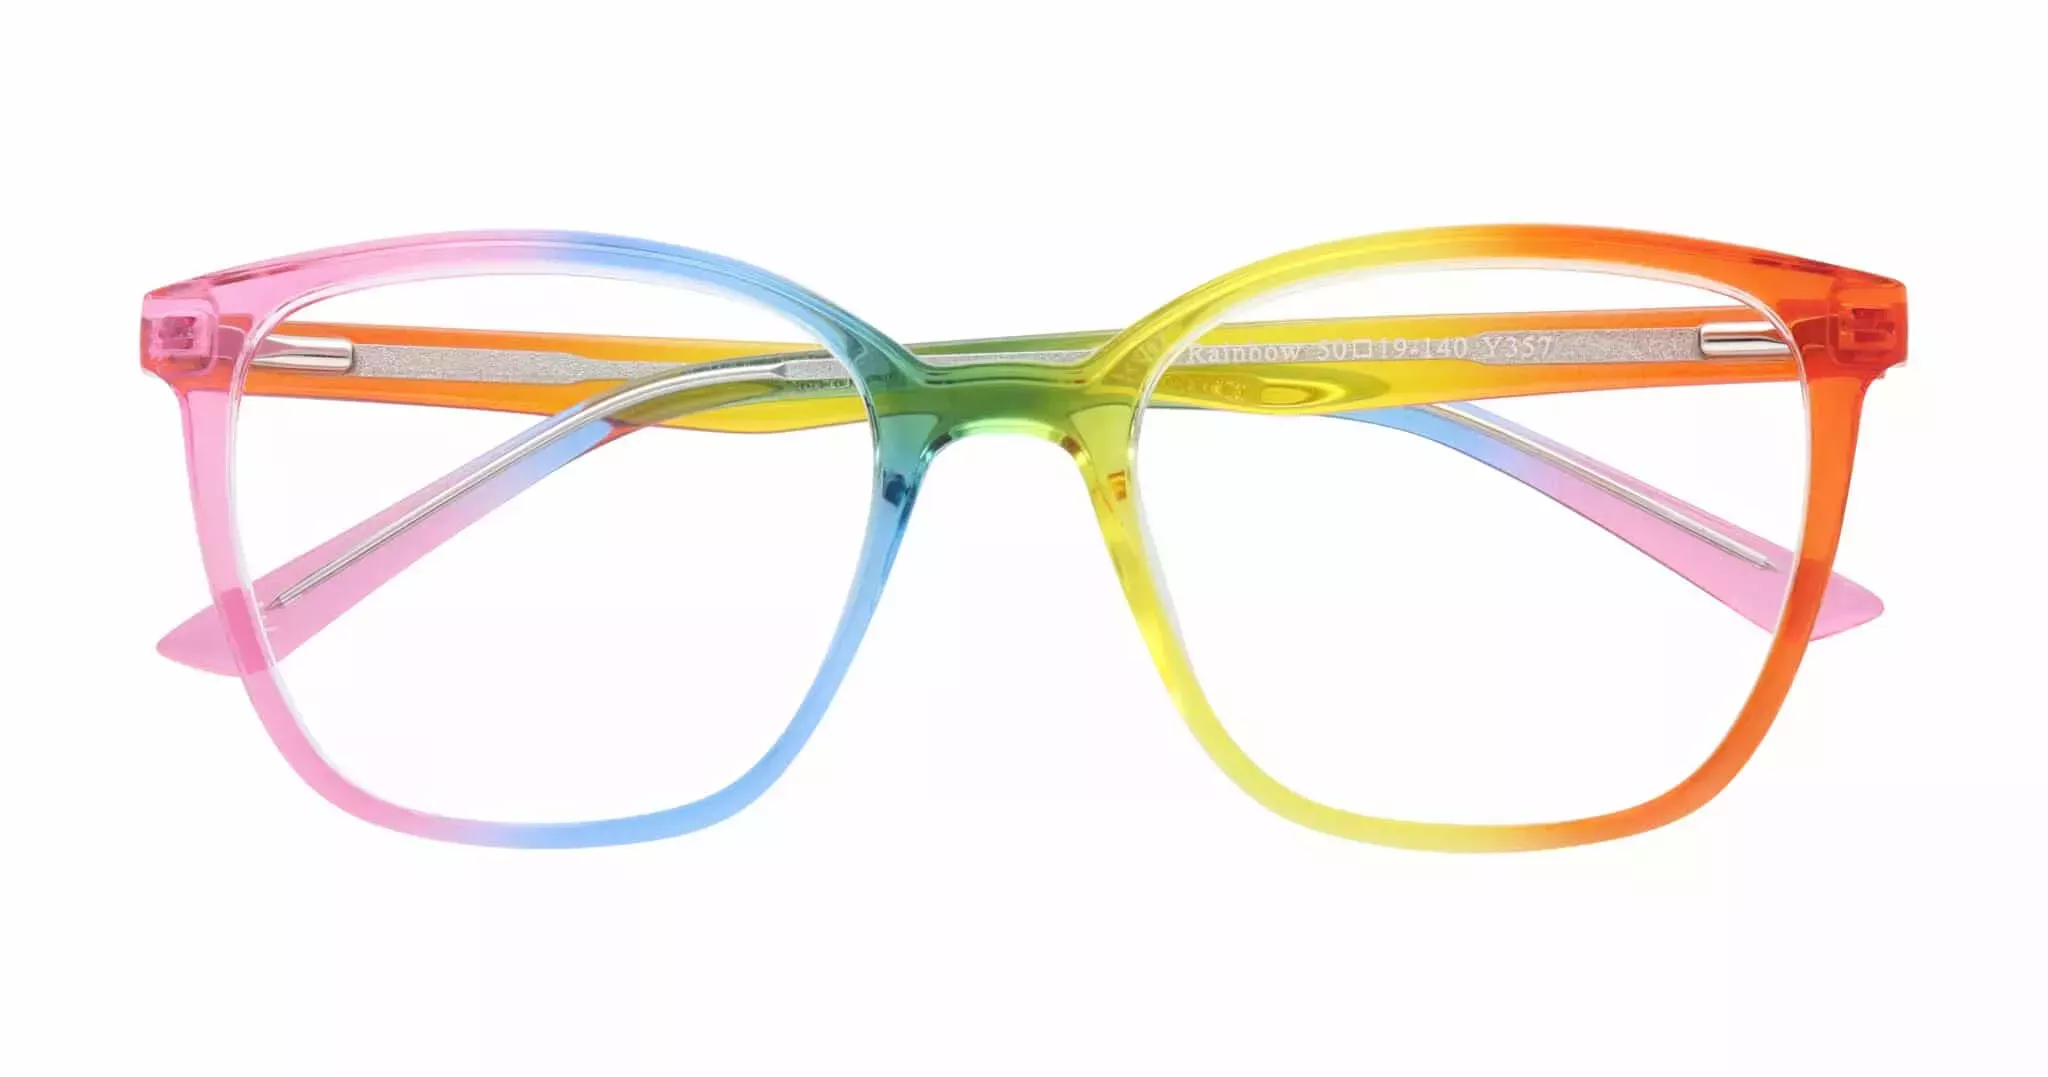 Estas gafas con temática del Orgullo recaudan fondos vitales para una organización benéfica de salud mental LGBTQ+.